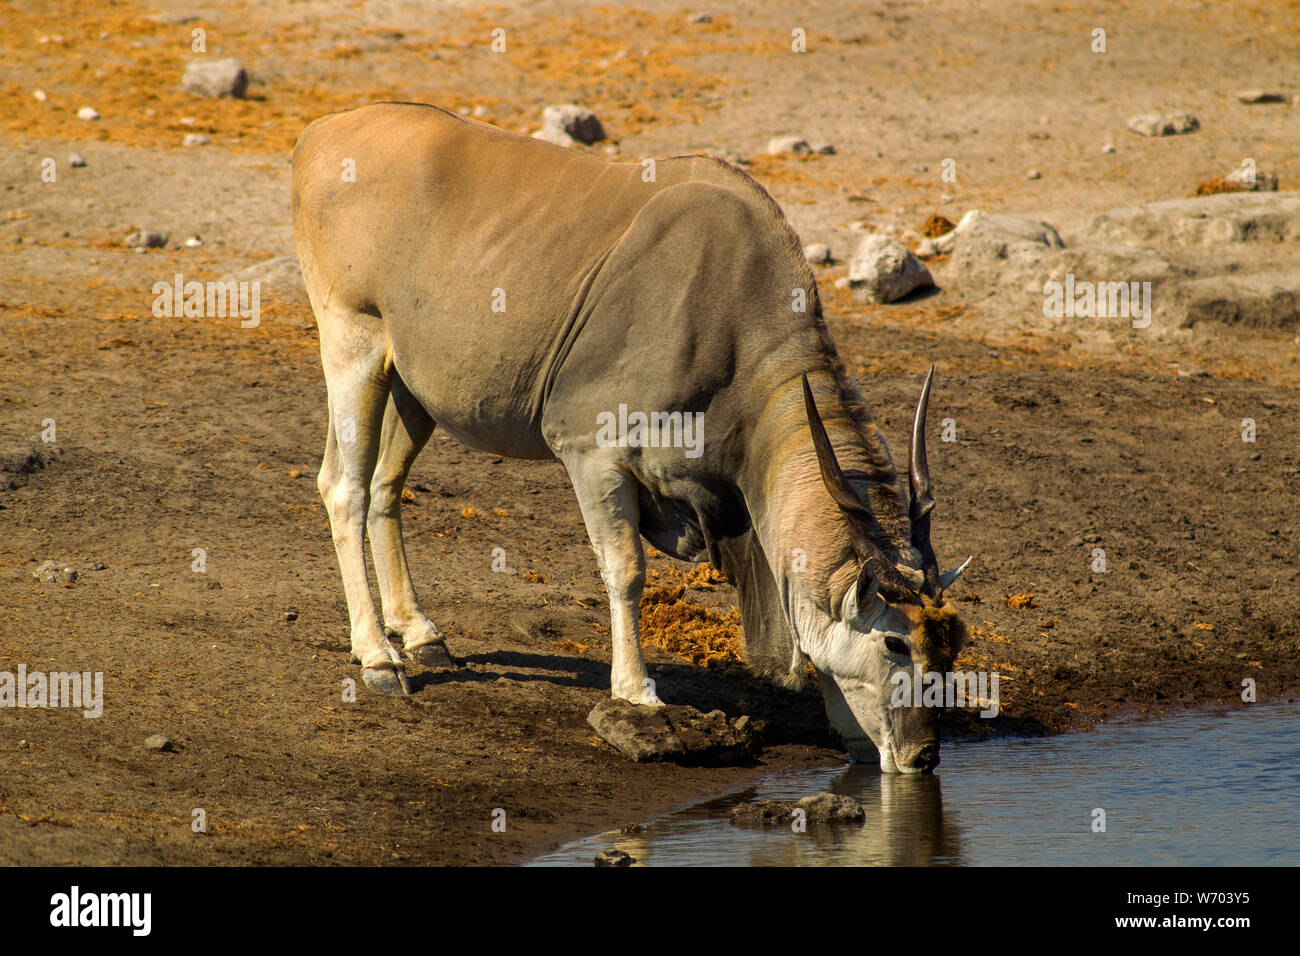 Eland, the largest anthelope drinking at Chudob waterhole, Etosha National Park, Namibia Stock Photo